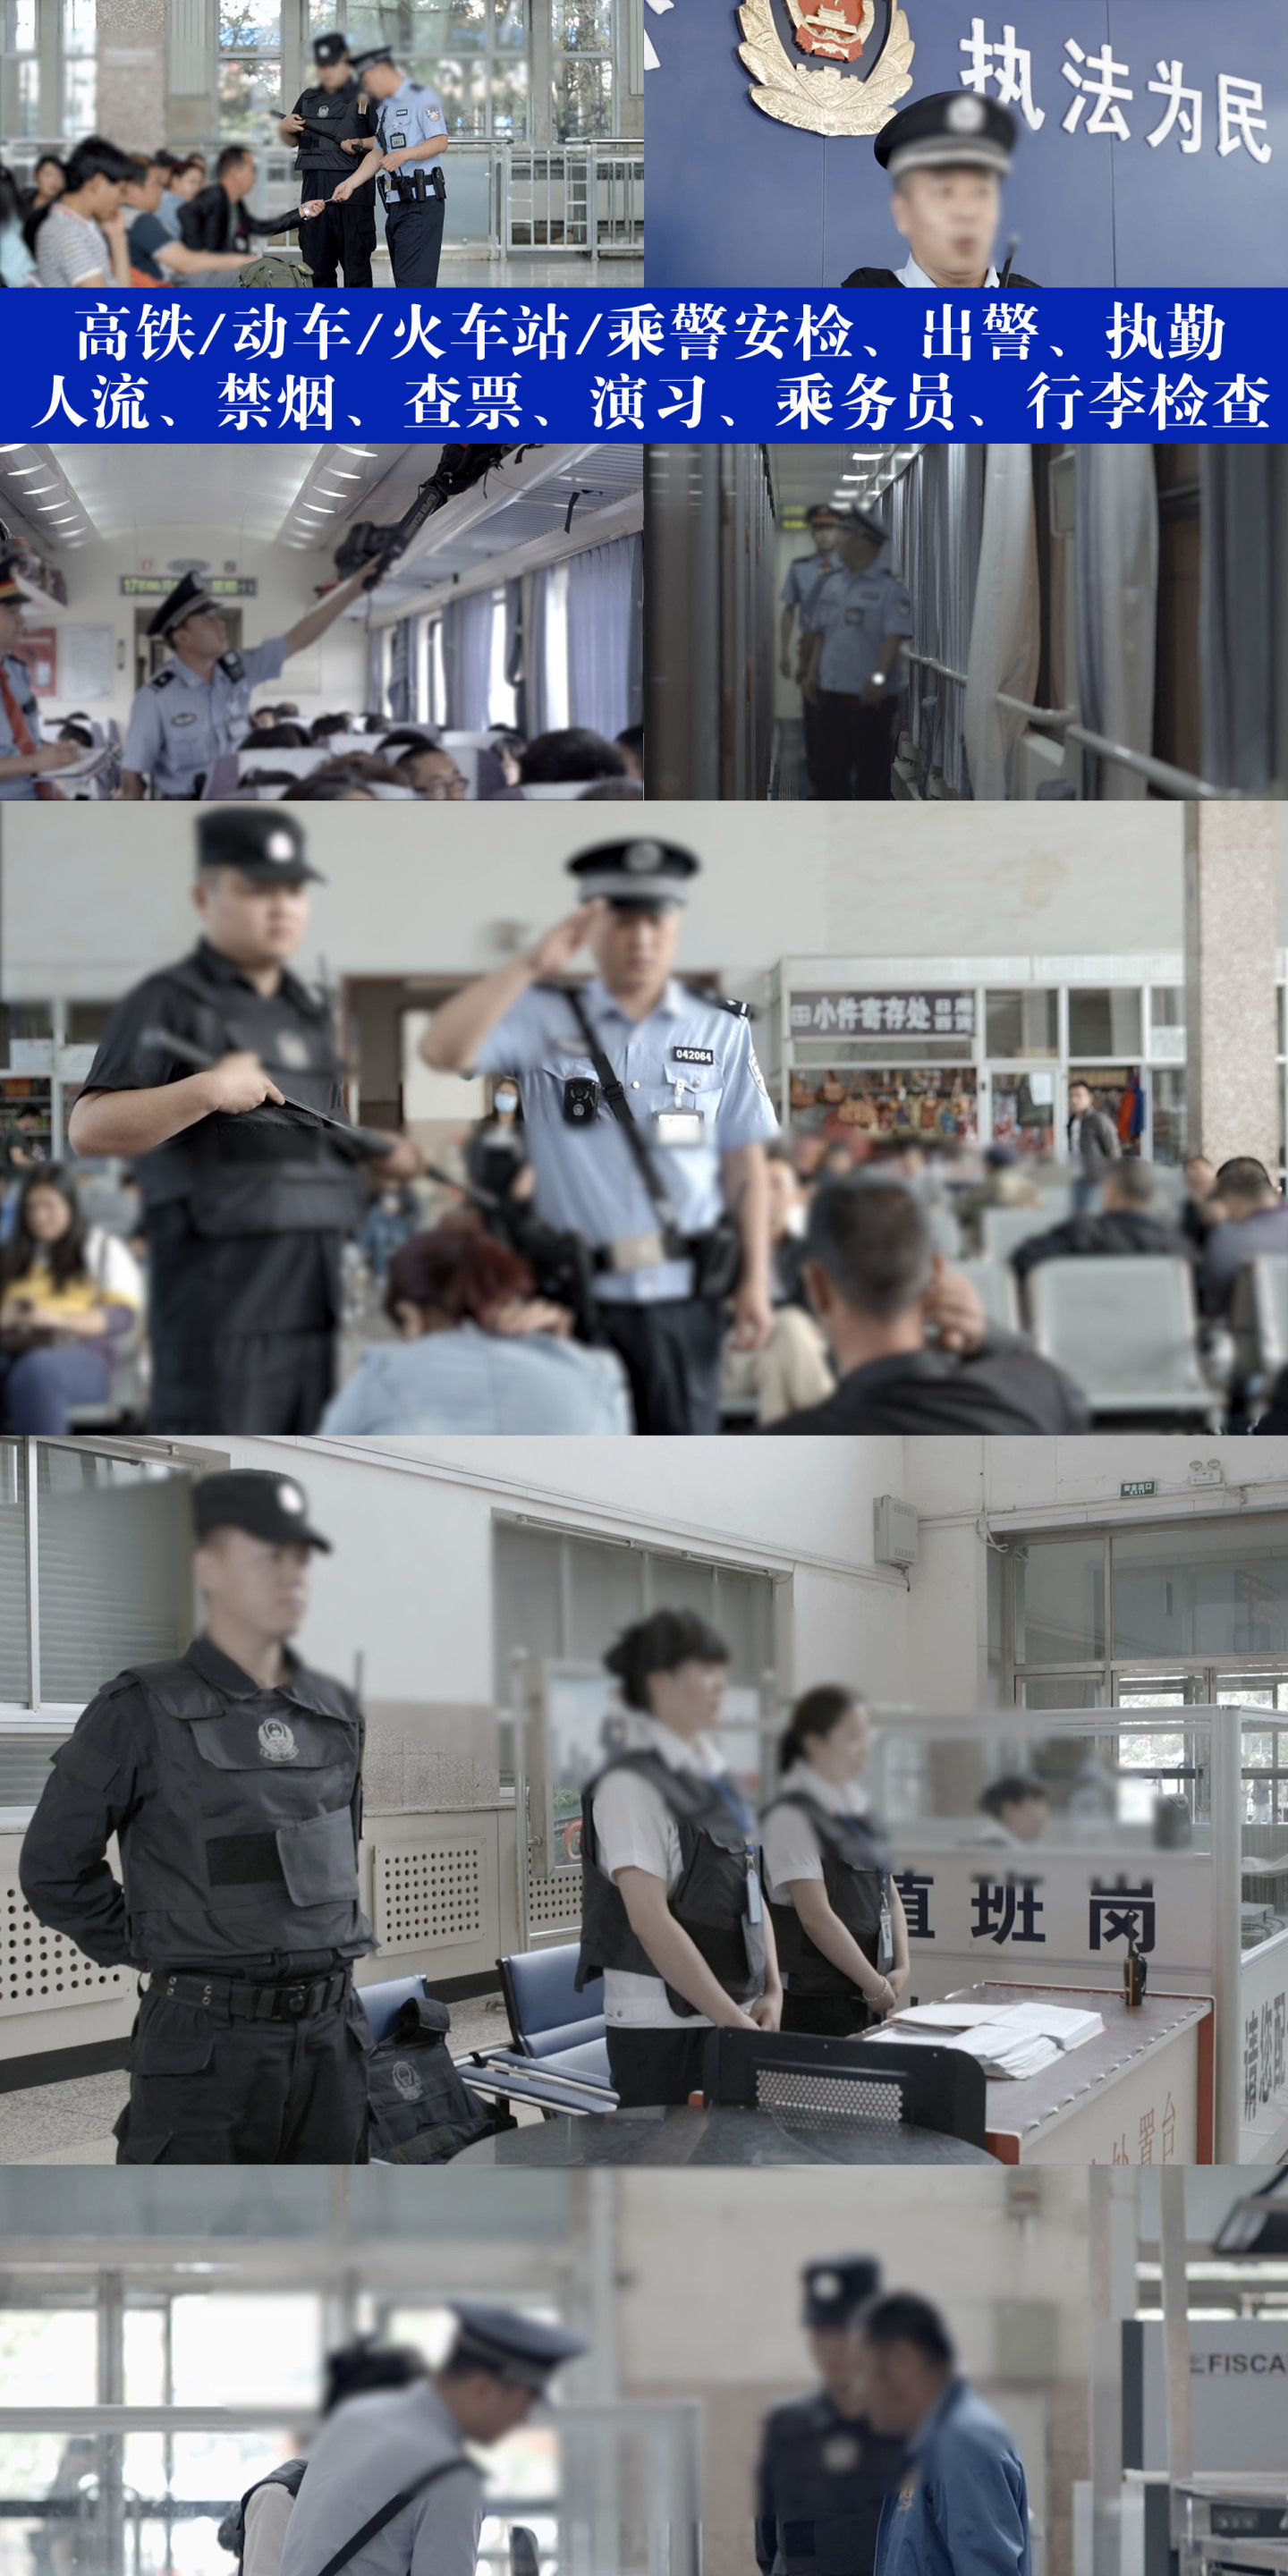 火车站动车高铁乘警安检验票合集视频素材